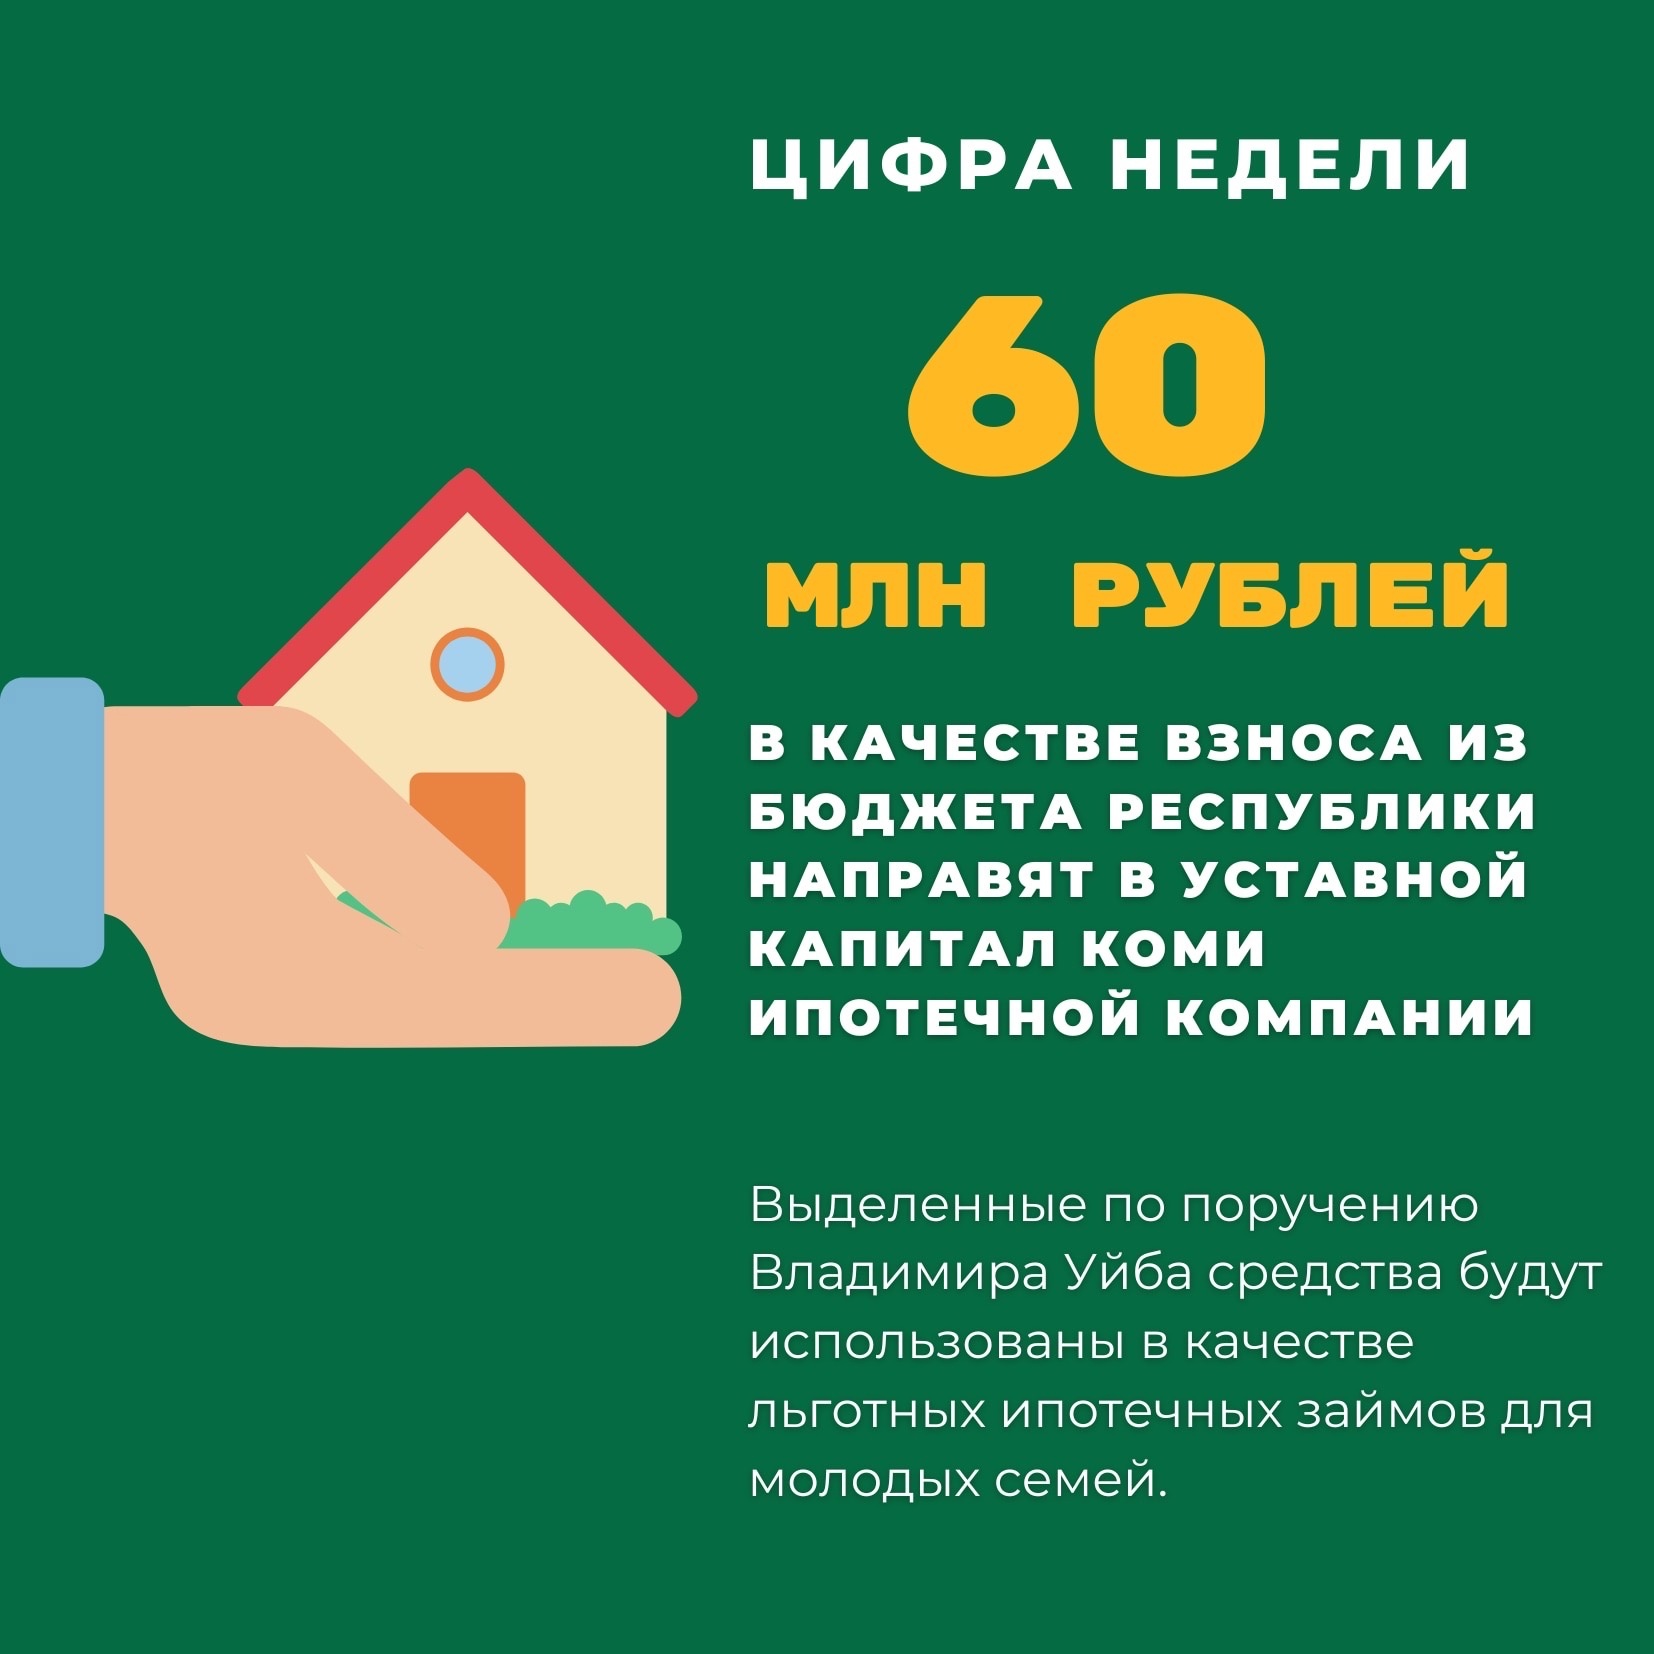 В уставной капитал Коми ипотечной компании из бюджета республики направят взнос в размере 60 млн рублей